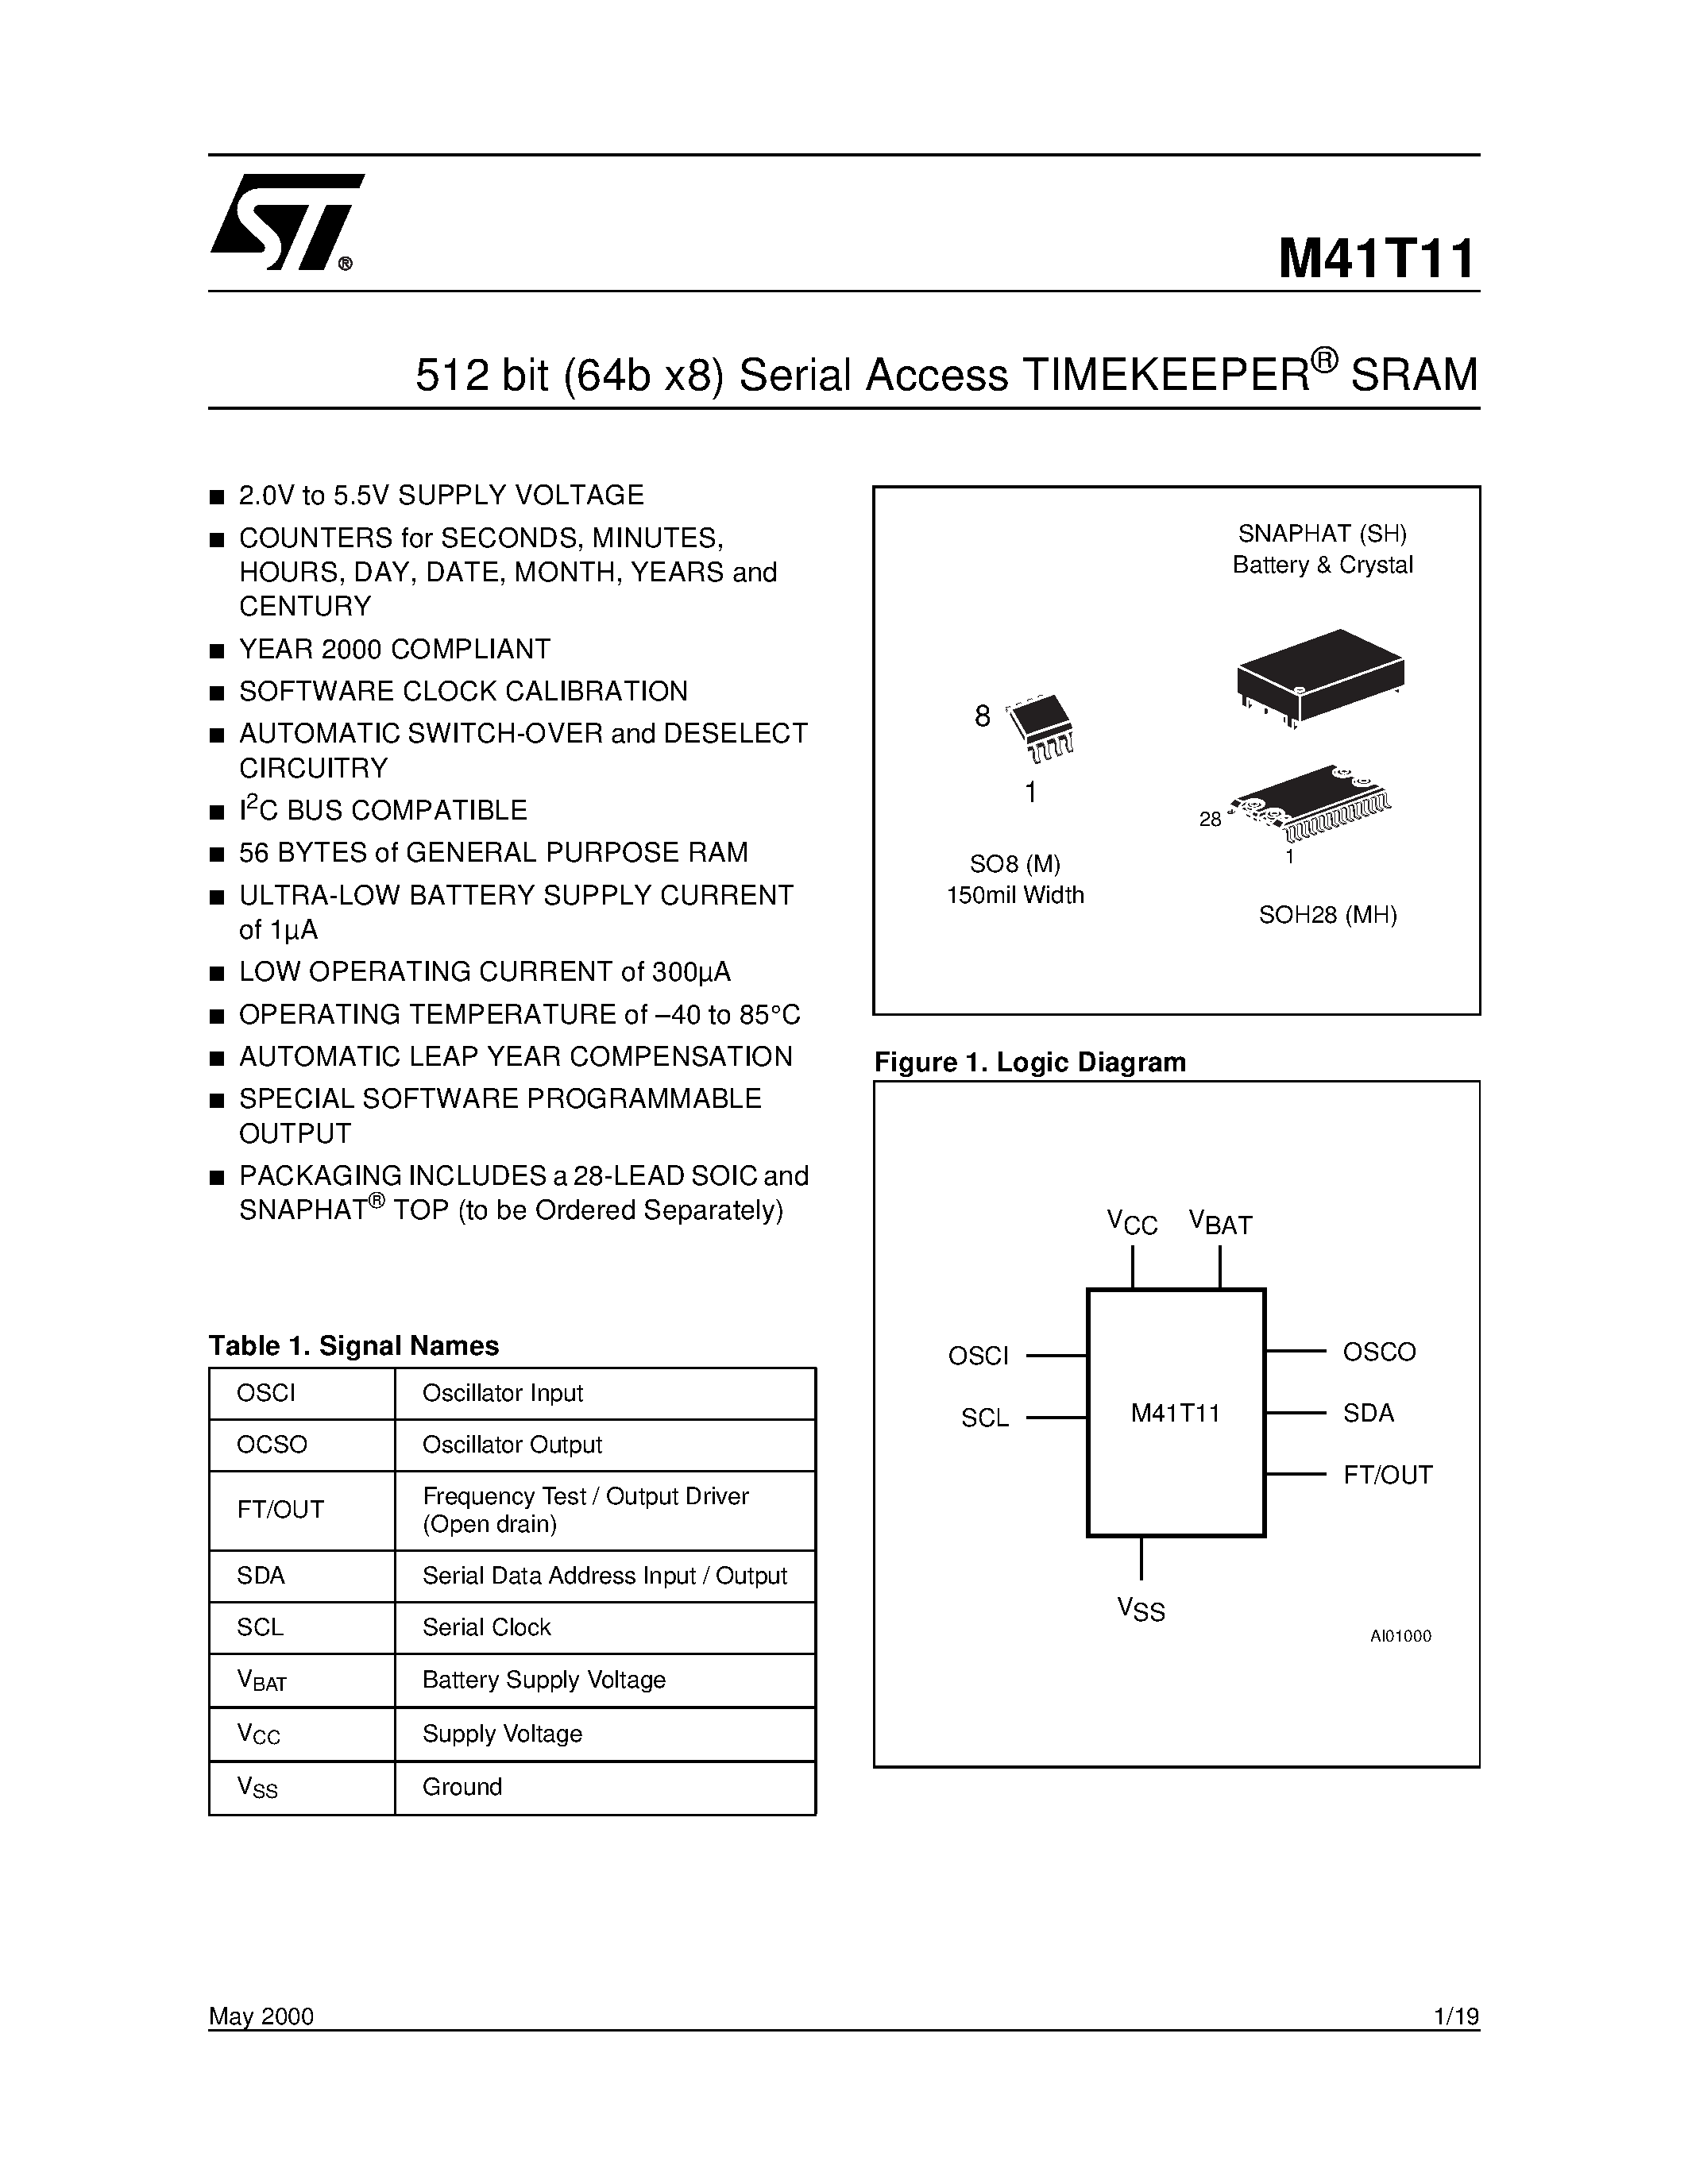 Datasheet M41TMH6 - 512 bit 64b x8 Serial Access TIMEKEEPER SRAM page 1